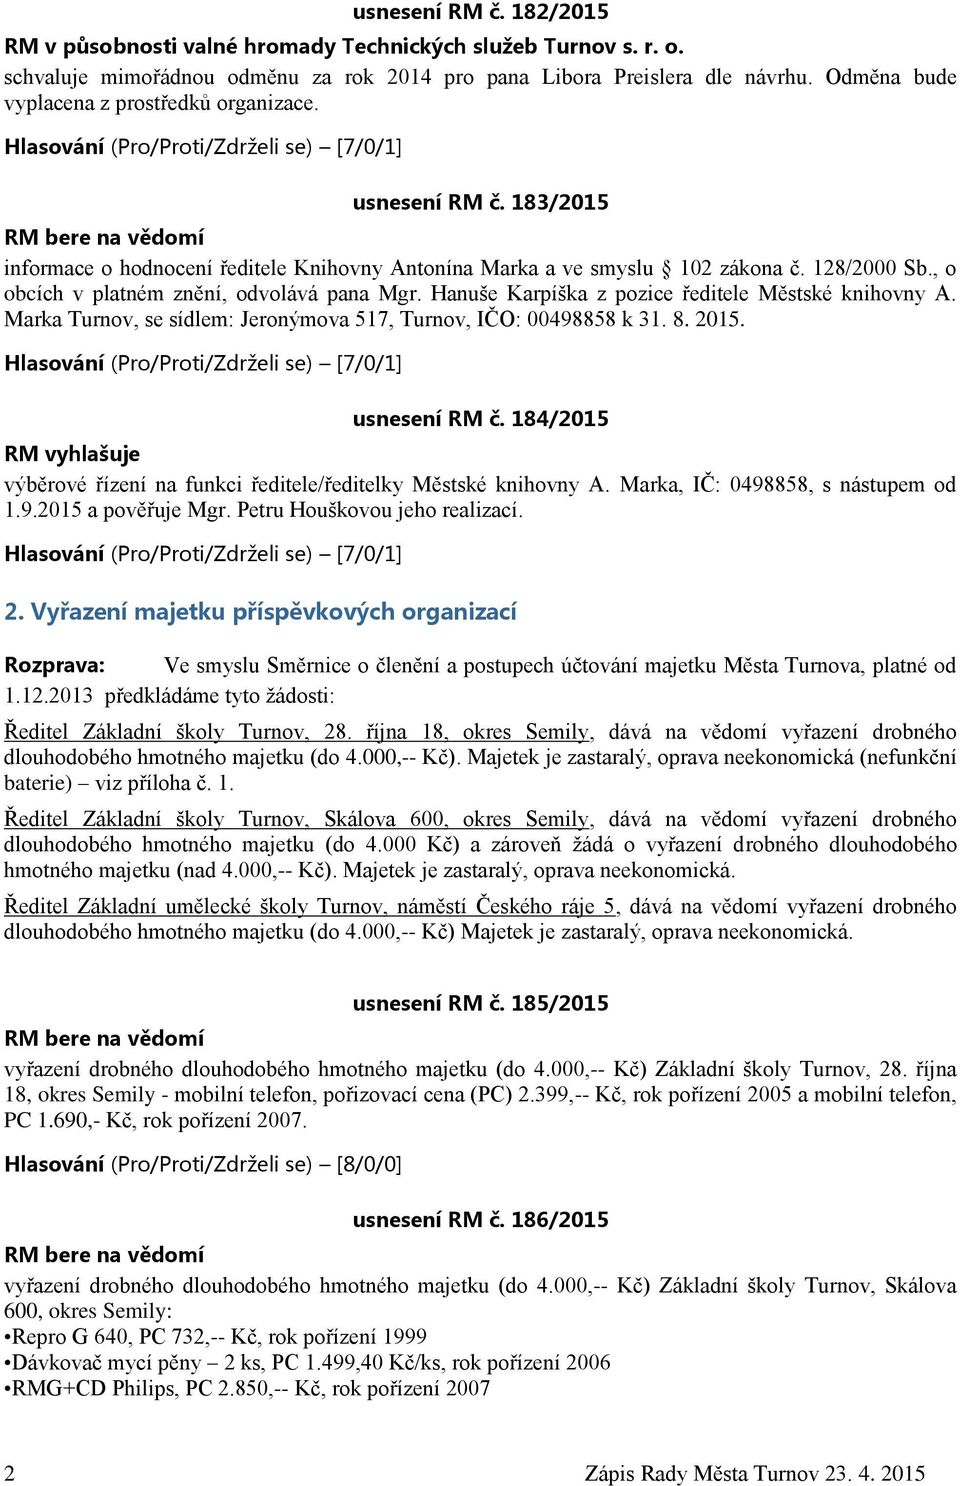 128/2000 Sb., o obcích v platném znění, odvolává pana Mgr. Hanuše Karpíška z pozice ředitele Městské knihovny A. Marka Turnov, se sídlem: Jeronýmova 517, Turnov, IČO: 00498858 k 31. 8. 2015.